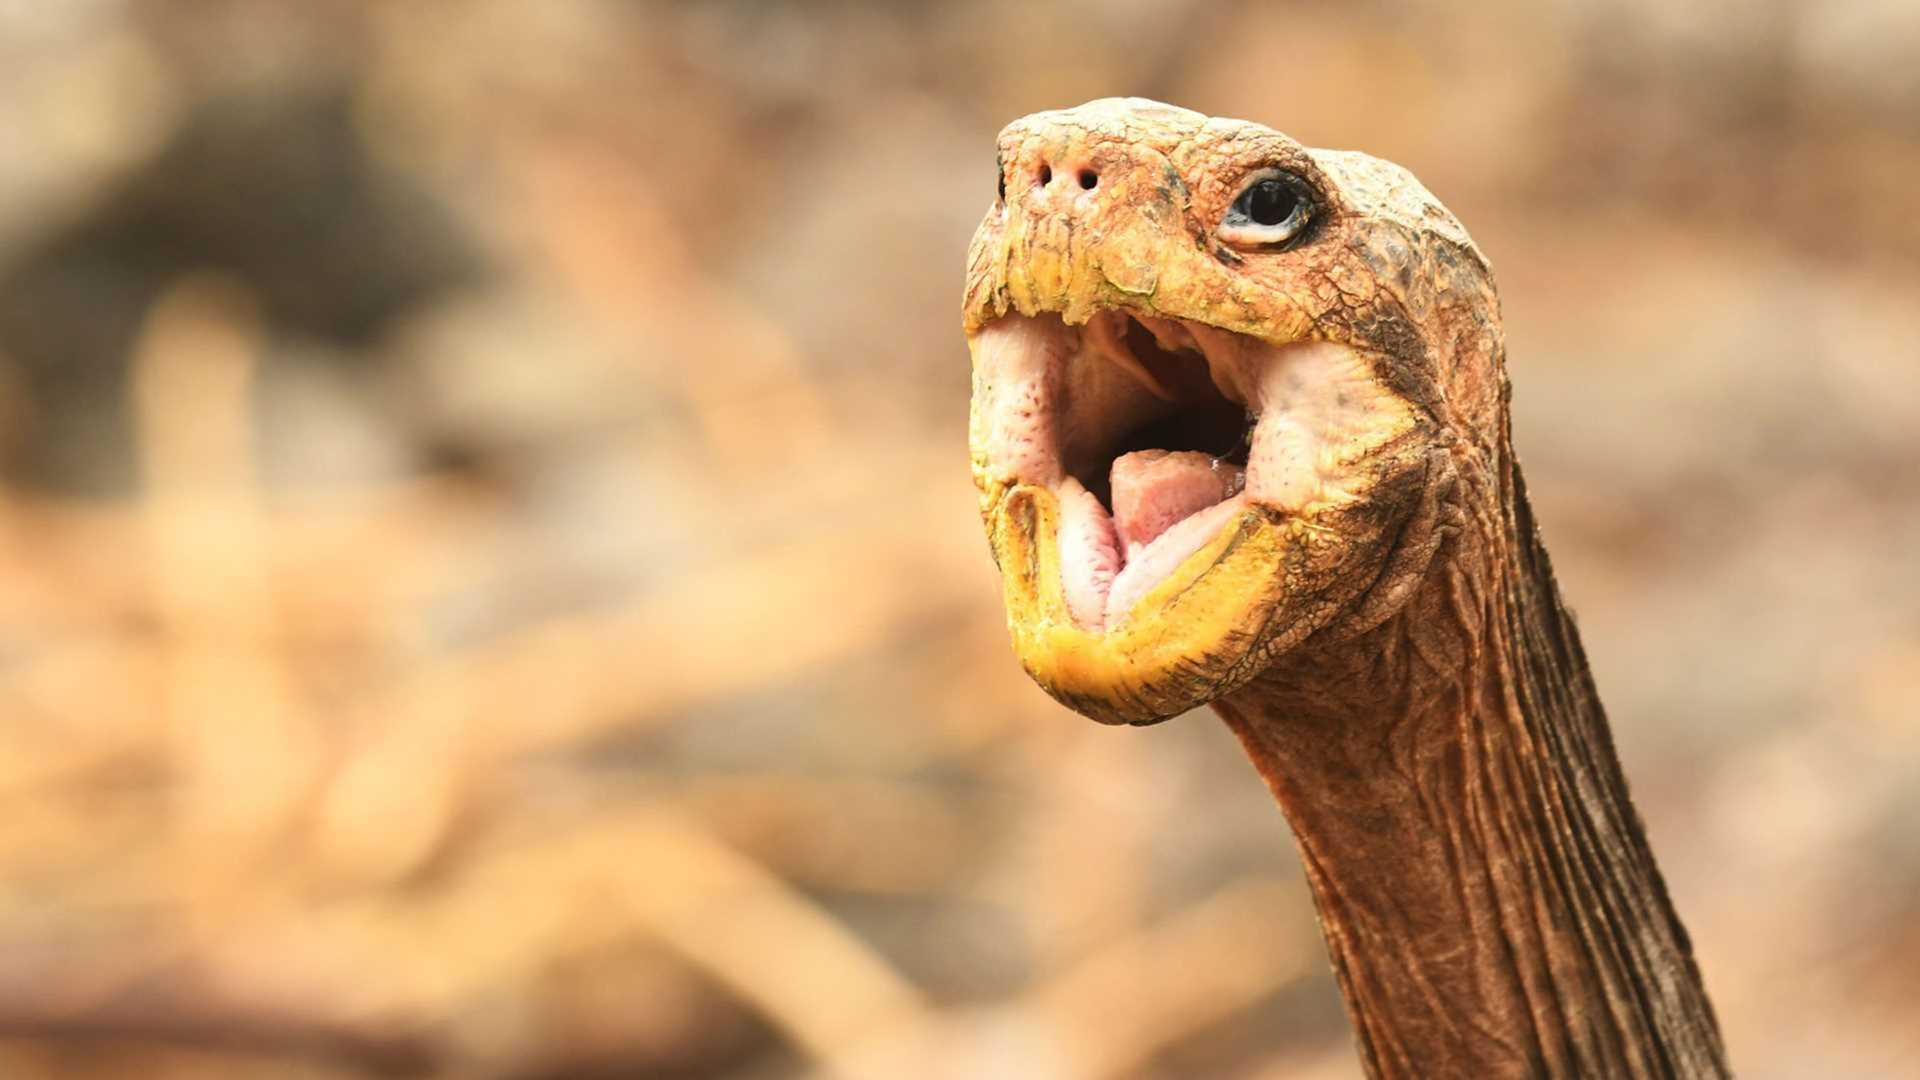 saddleback tortoise with open mouth